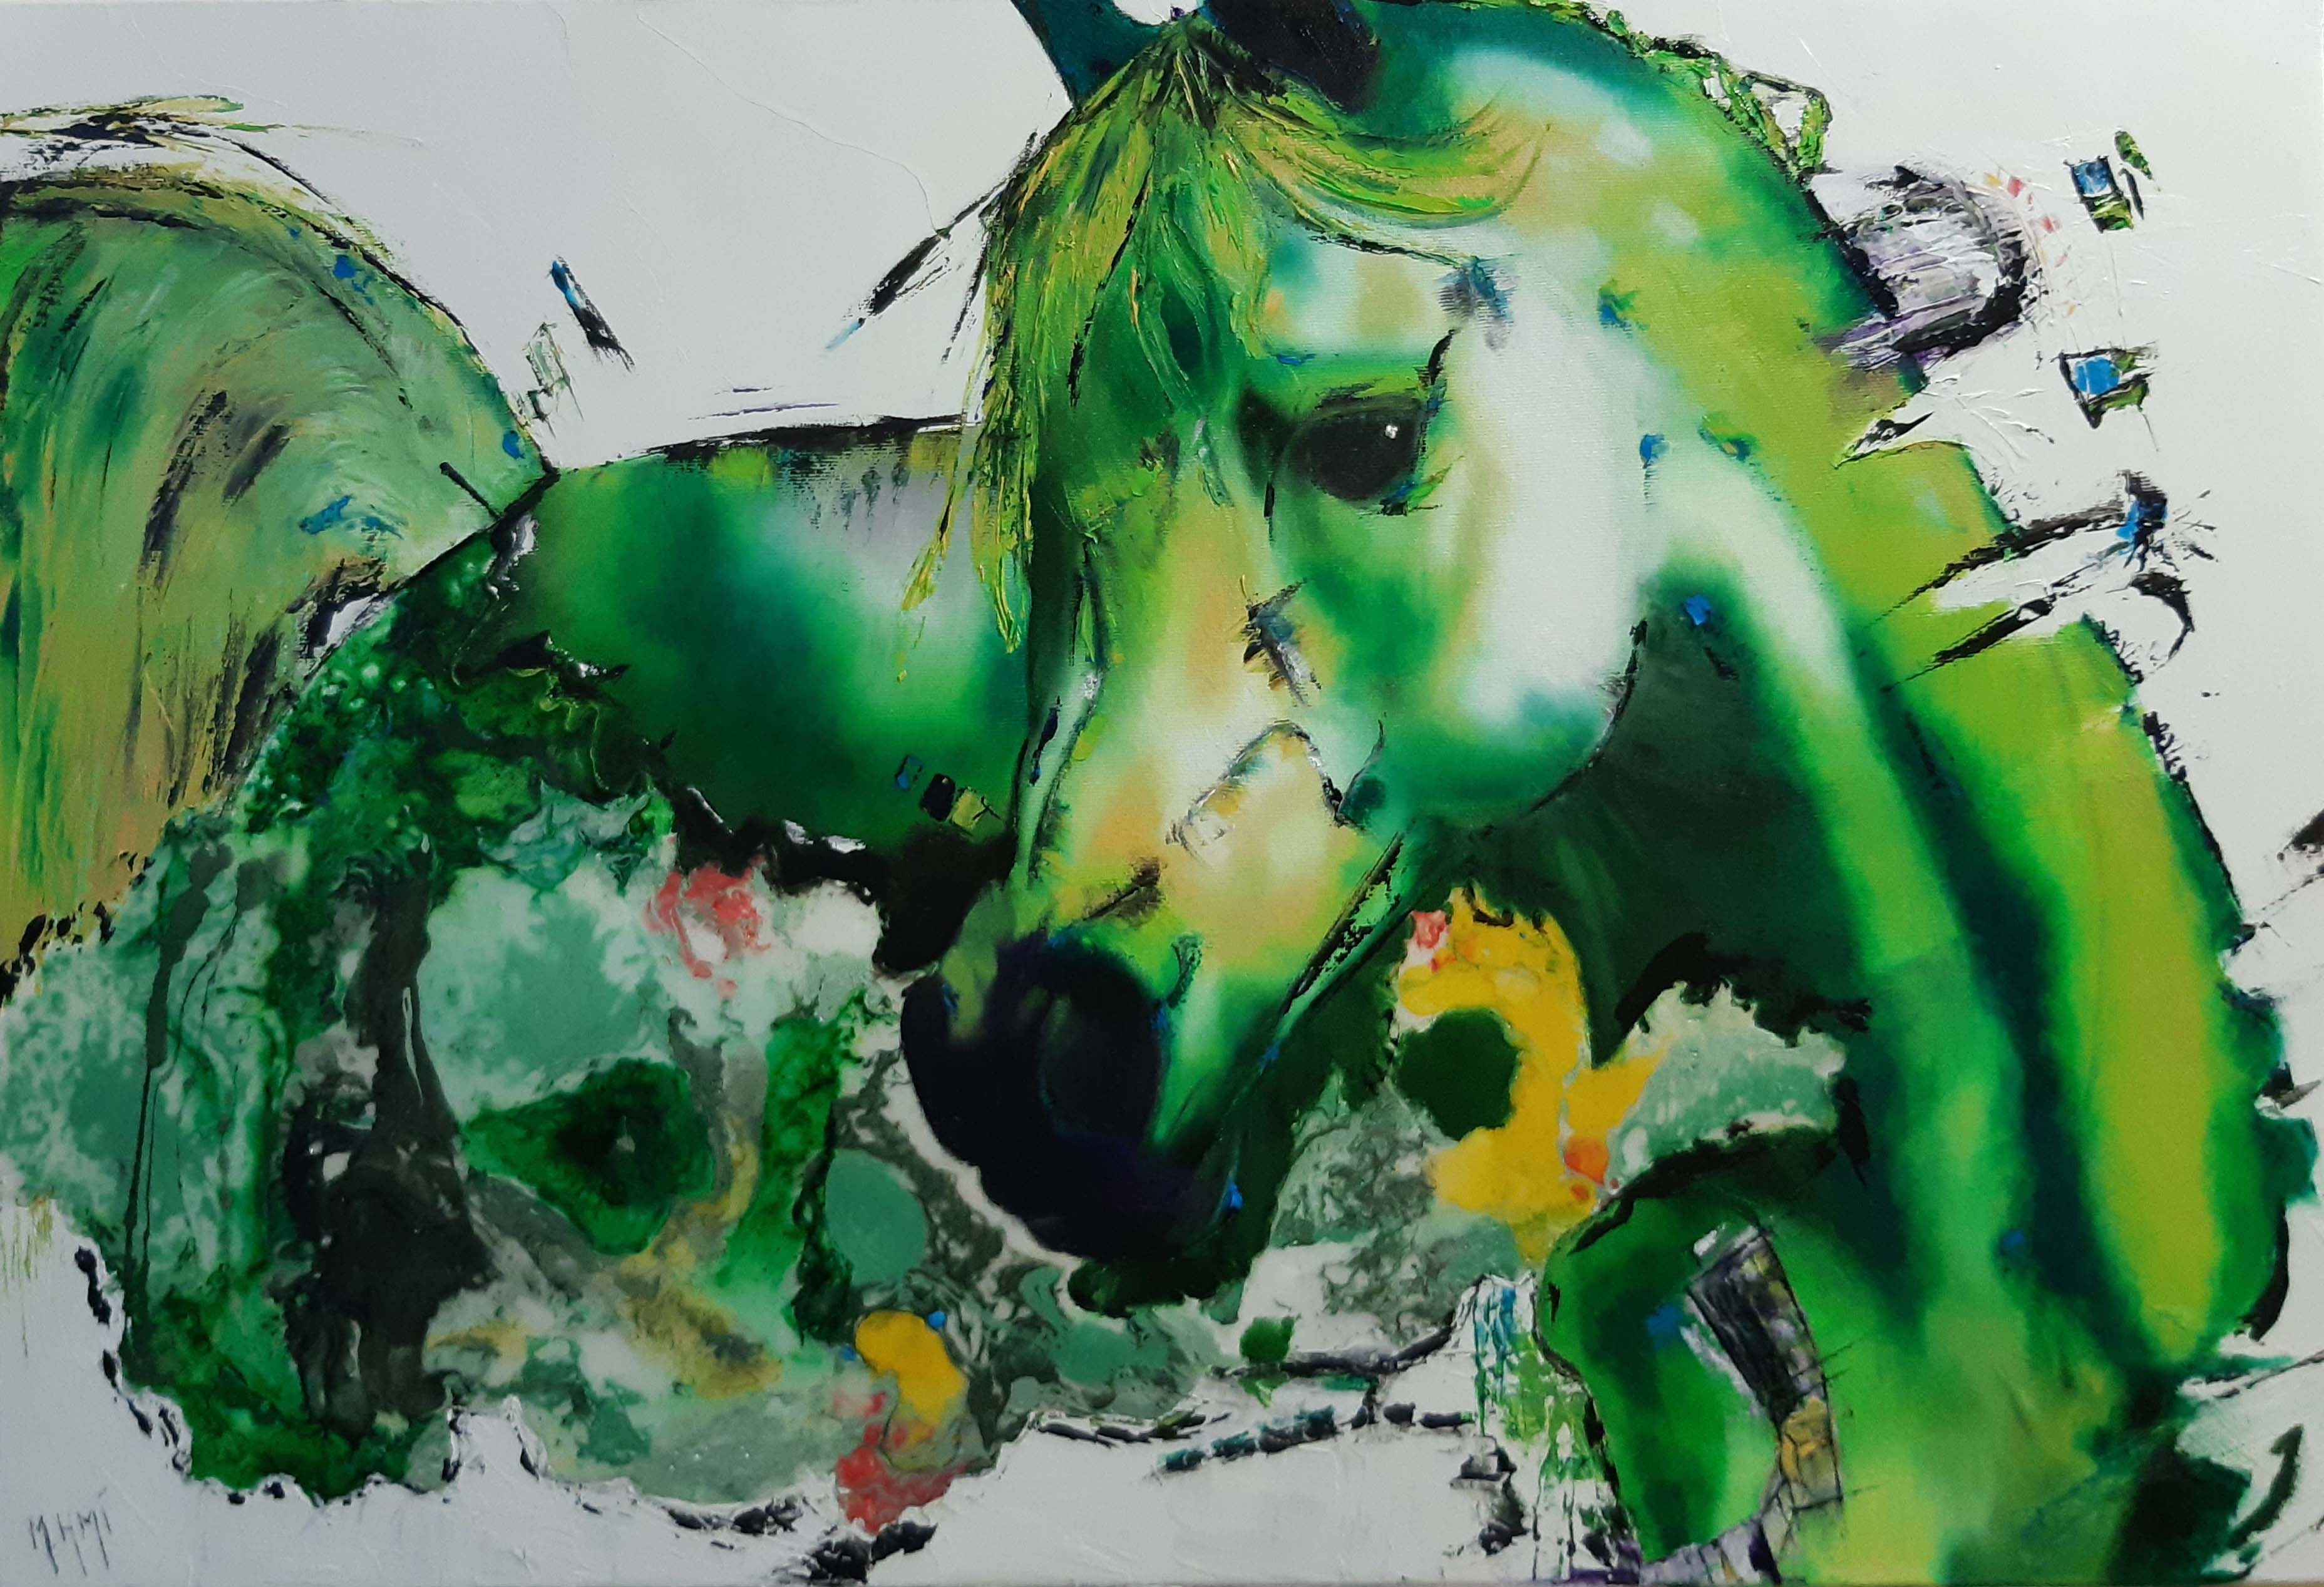 Cheval fougueux réaliste, peinture huile et résine sur chassis, couleur verte sur fond blanc